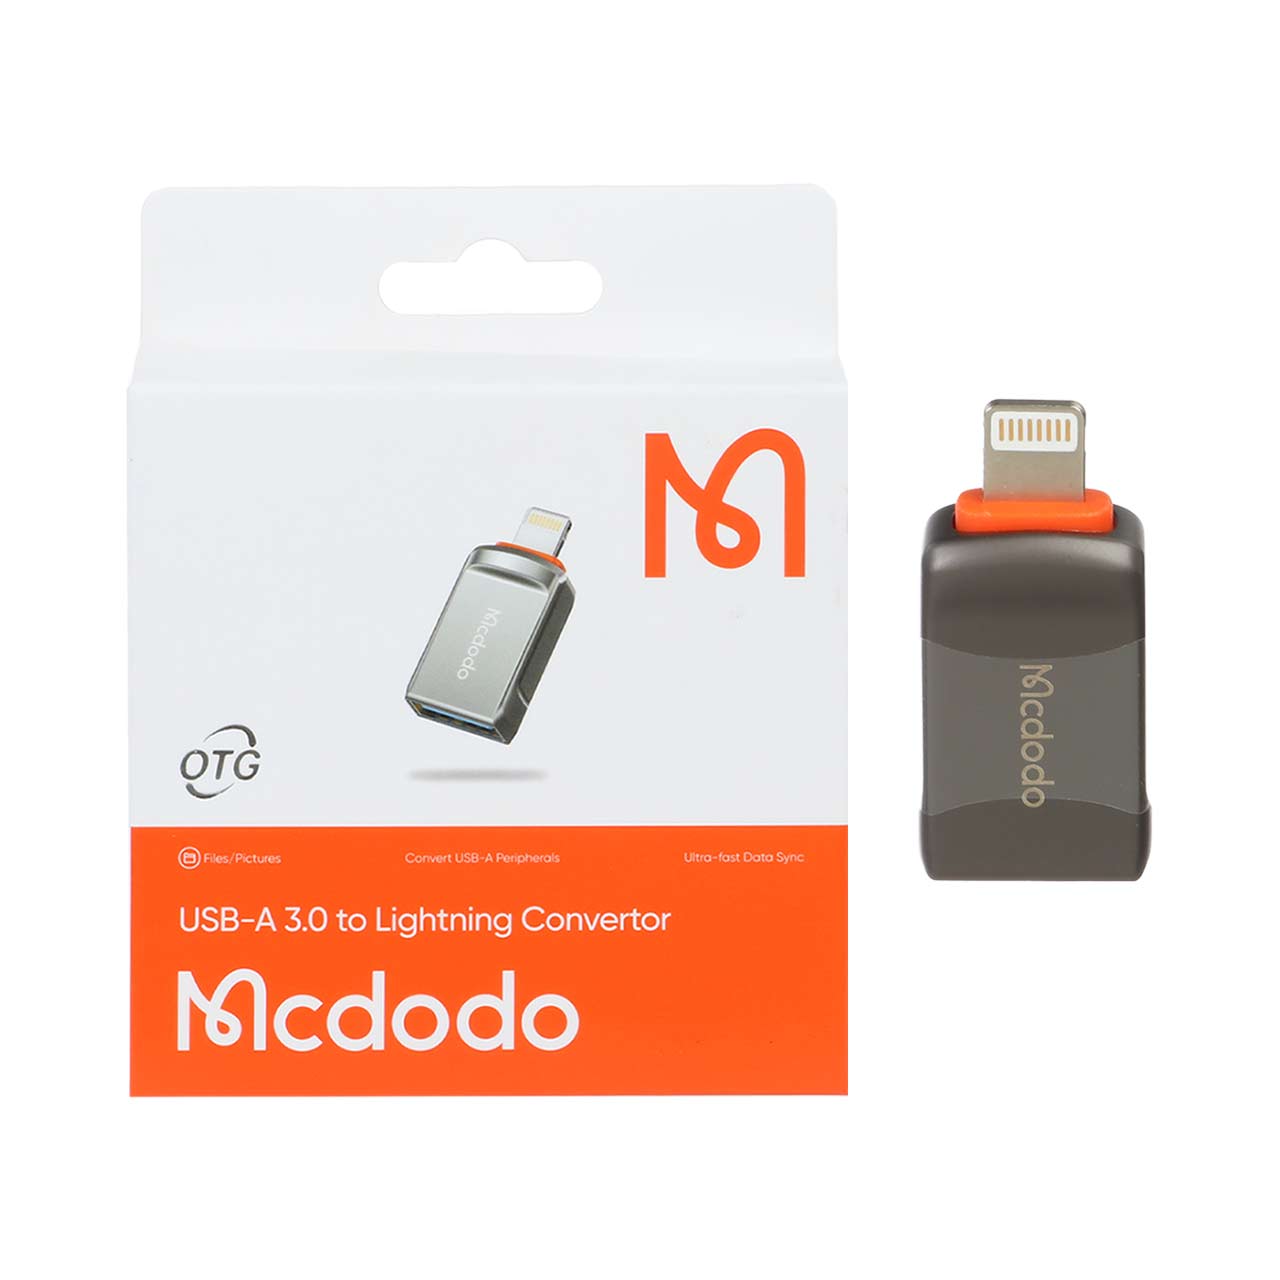 تبدیل Mcdodo OTG USB3.0 TO Lightning مدل OT-8600 - خاکستری #